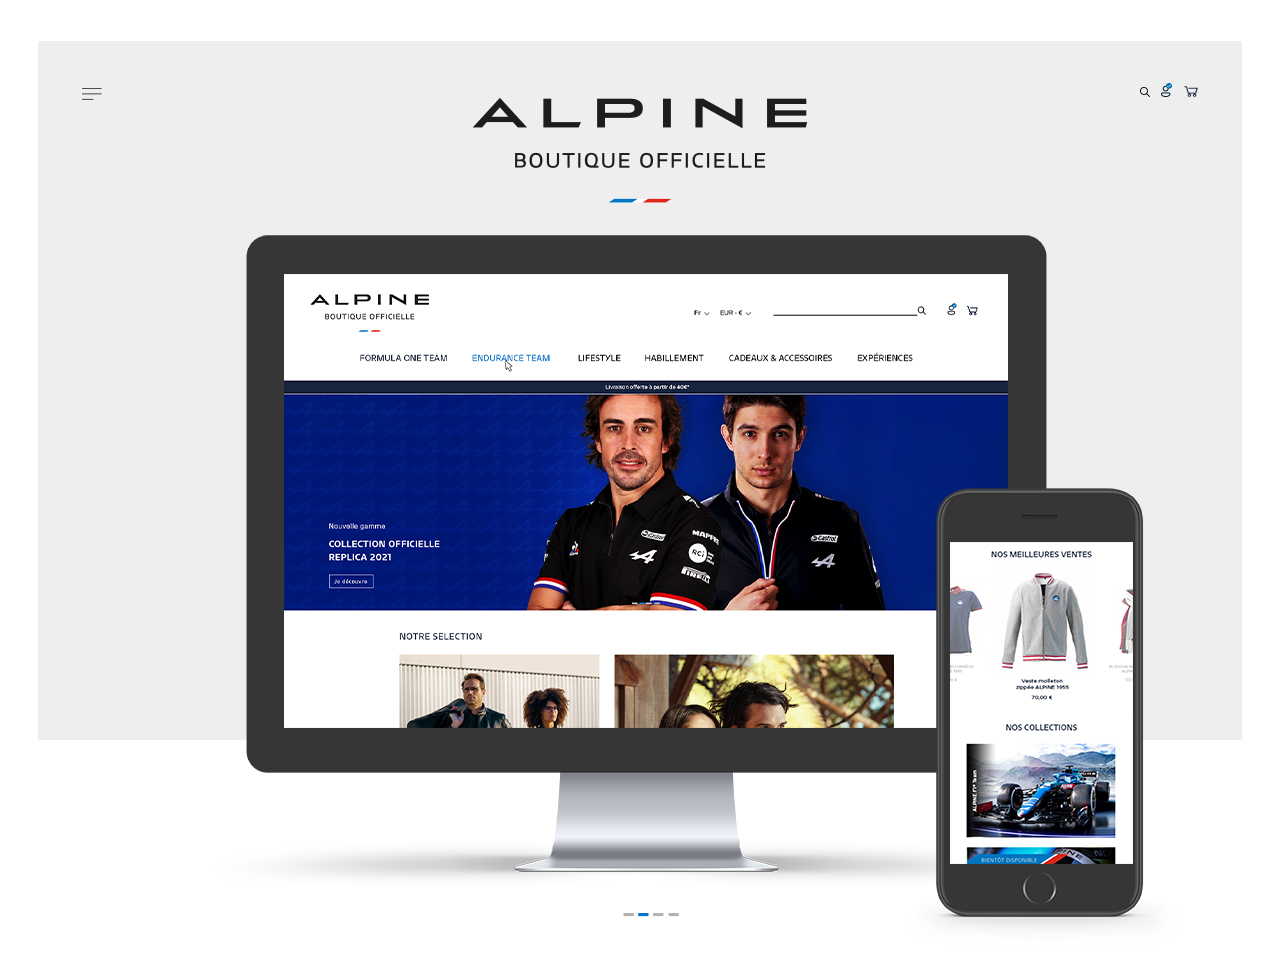 Nouvelle collection sur la boutique officielle Alpine.